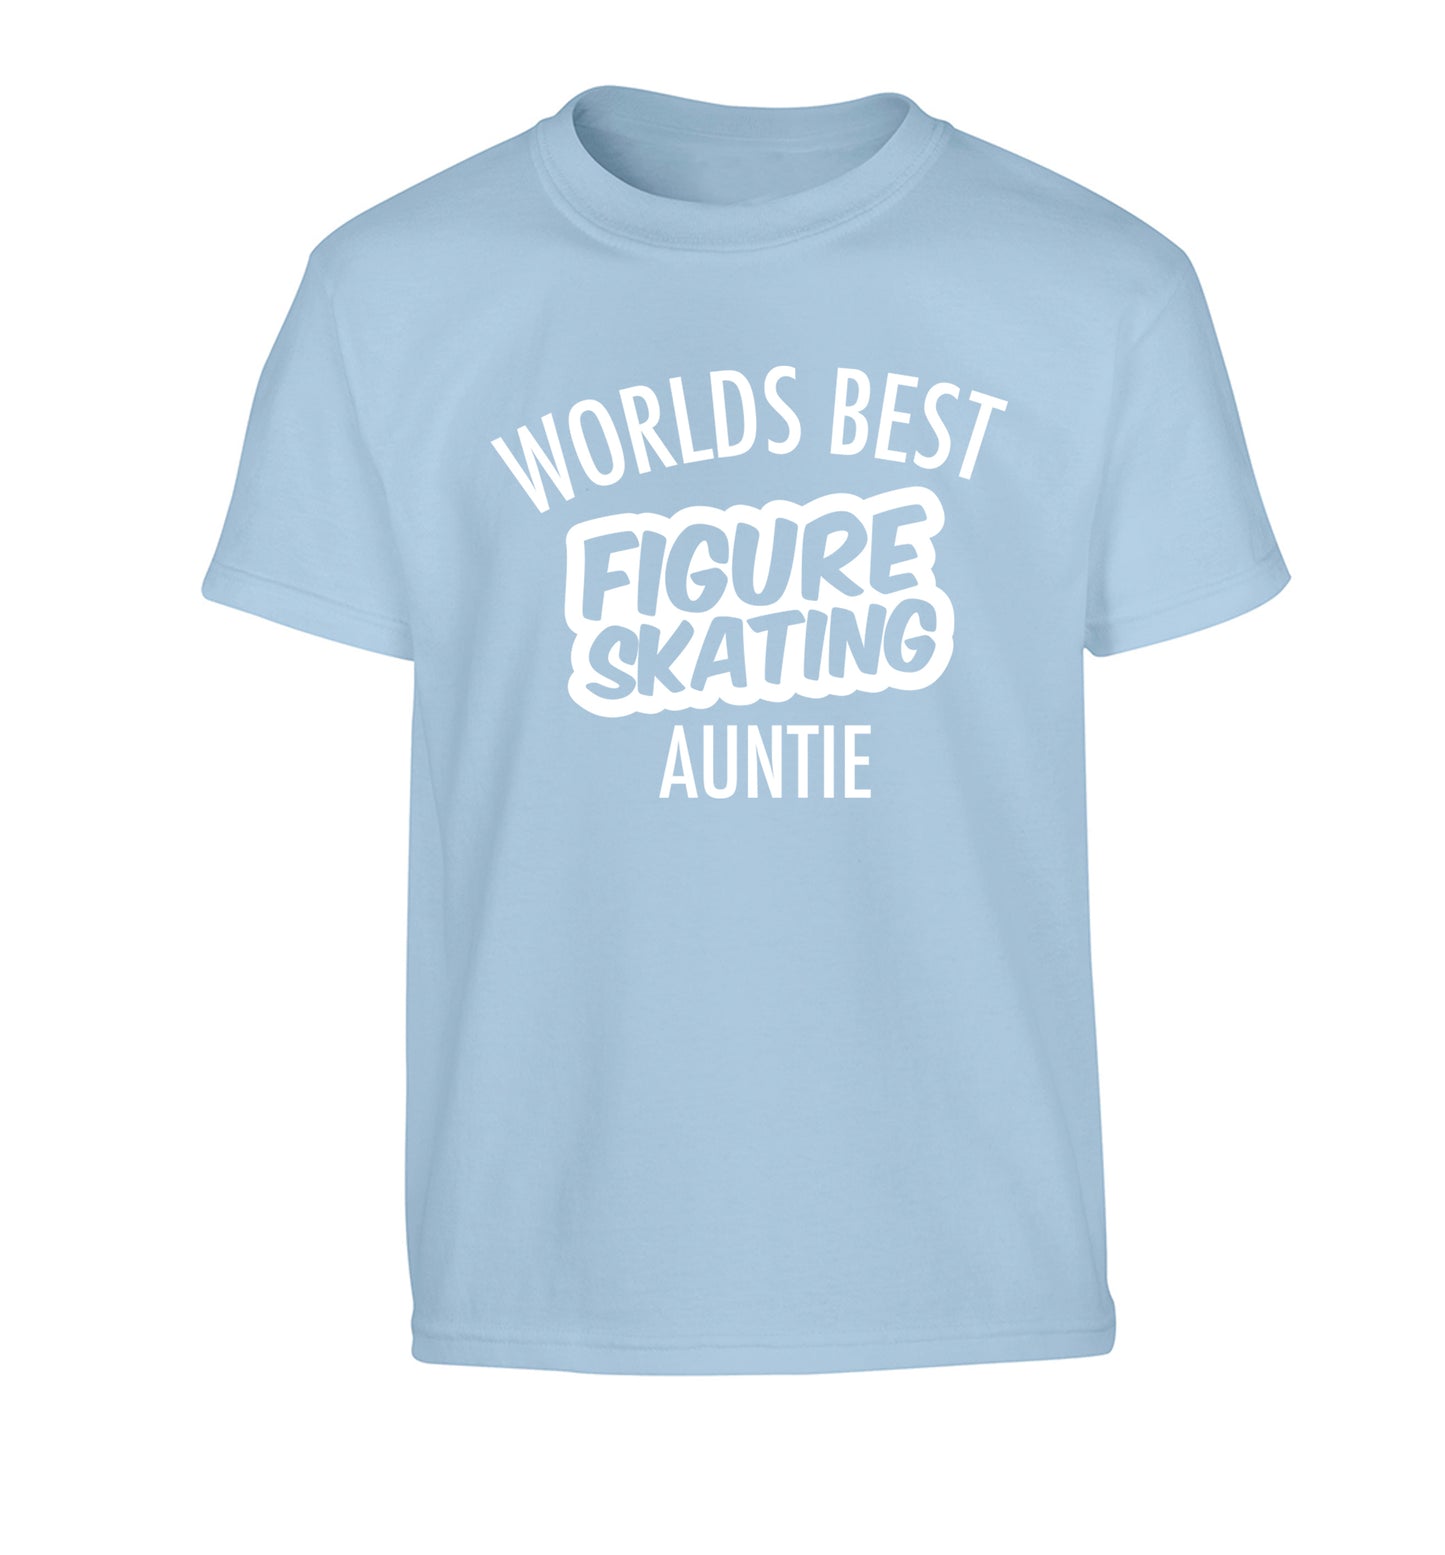 Worlds best figure skating auntie Children's light blue Tshirt 12-14 Years